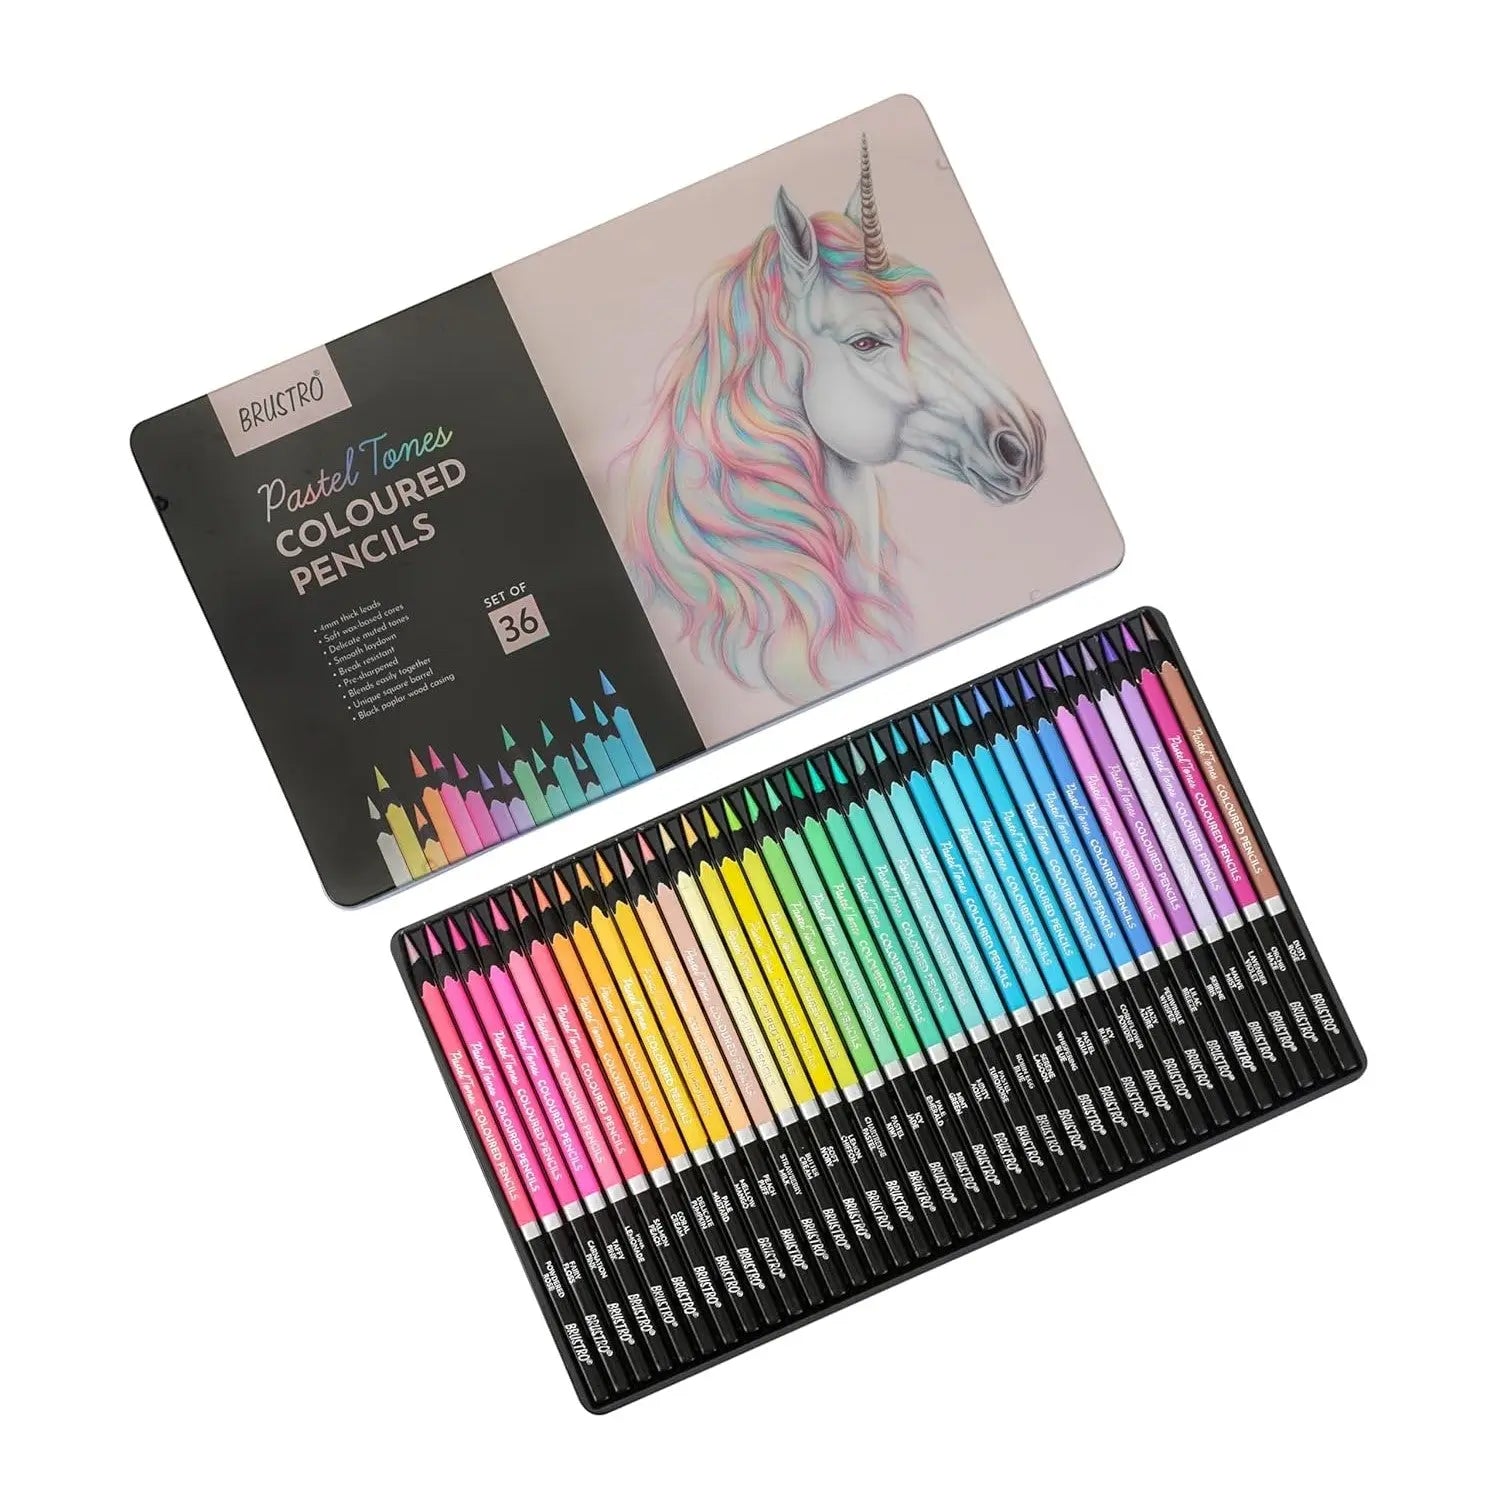 Brustro Artists' Coloured Pencils Pastel Tone Set of 36 (in Elegant tin Box) Brustro